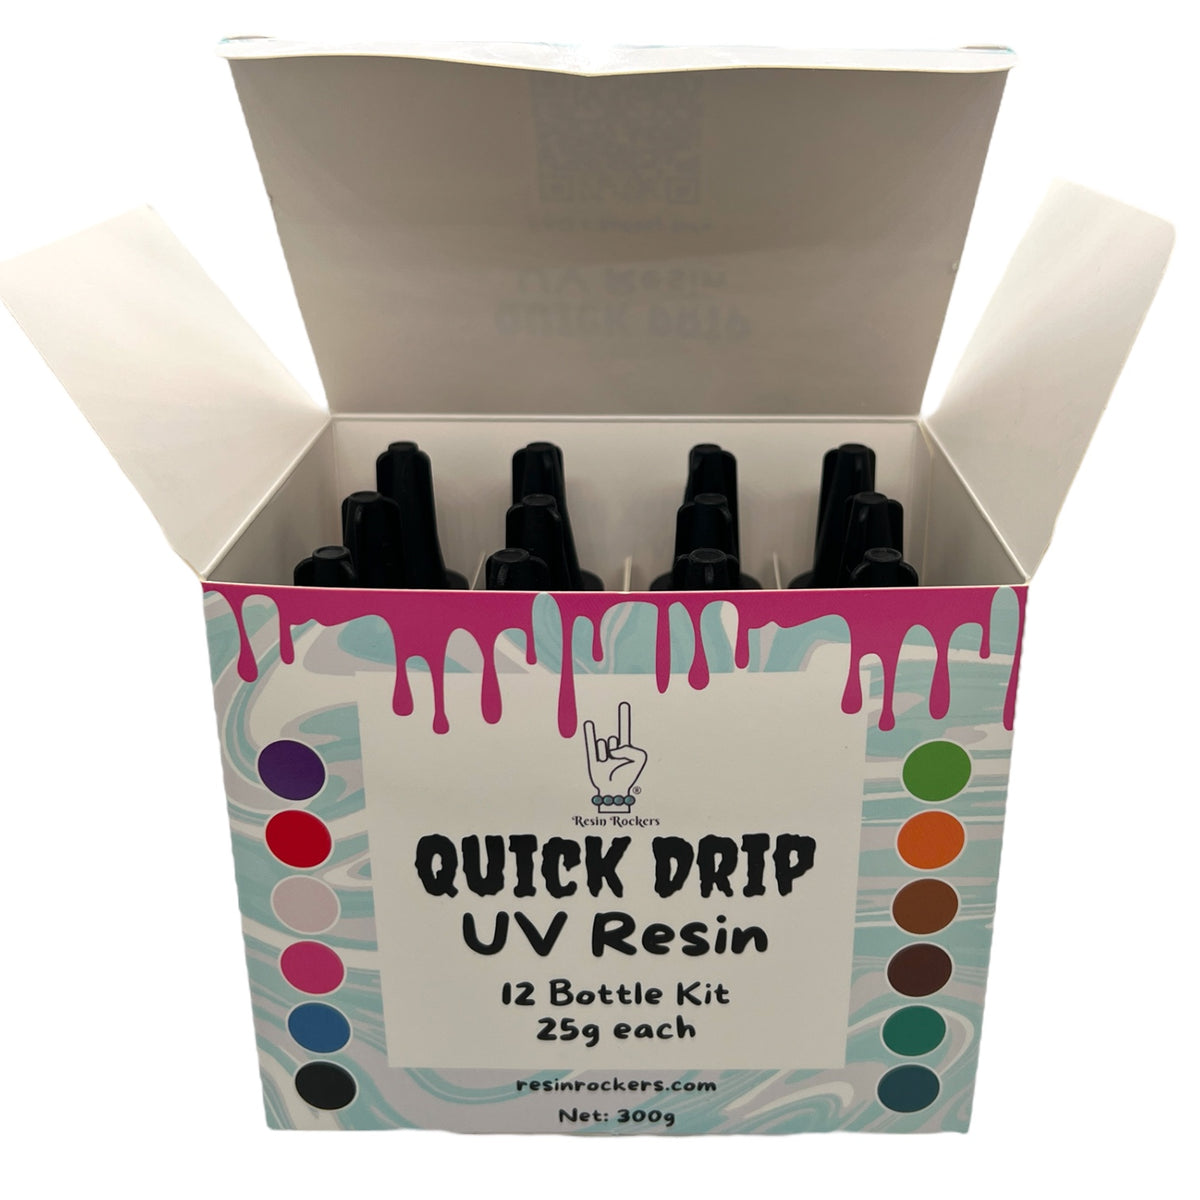 Resin Rockers Quick Drip UV Resin for Pens &amp; Tumblers